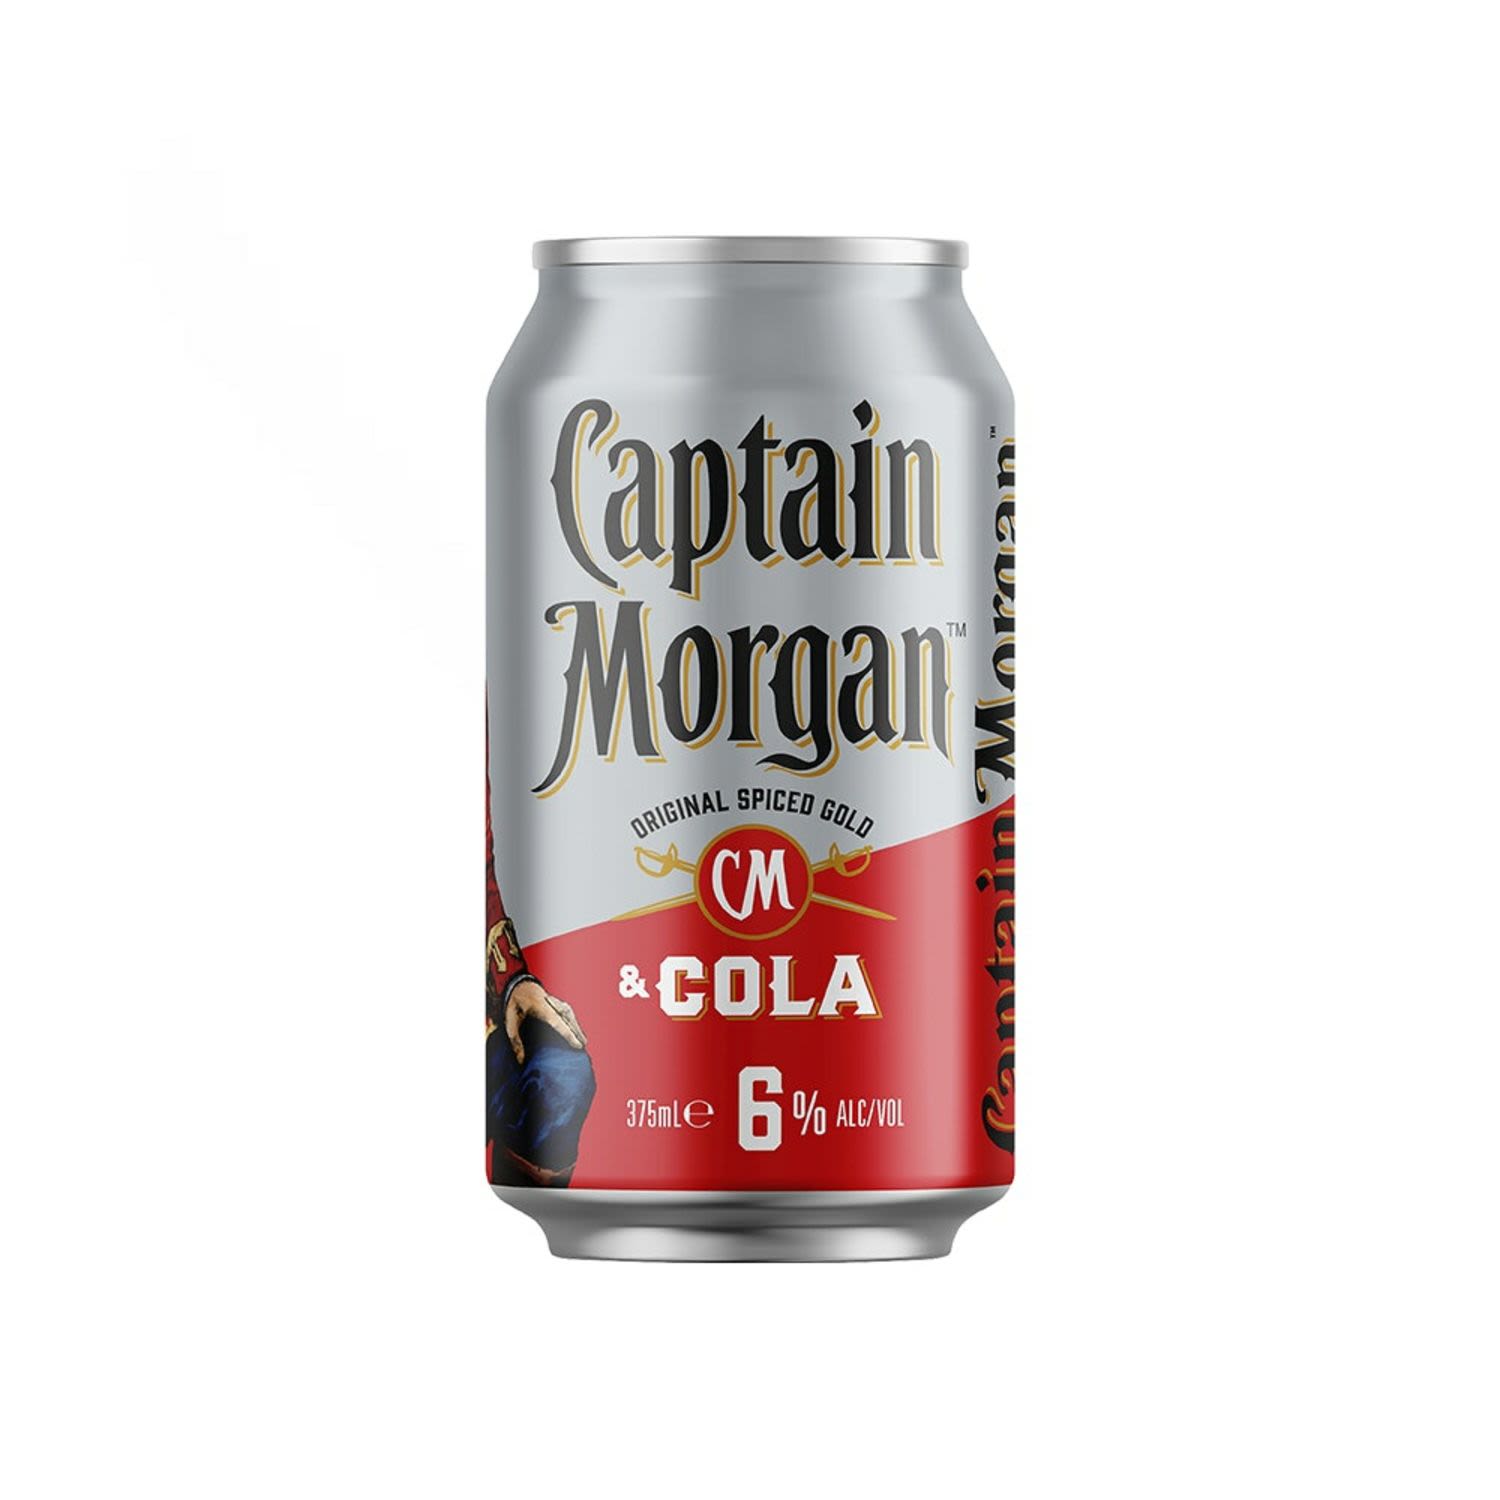 Captain Morgan Original Spiced Gold & Cola 6% Can 375mL